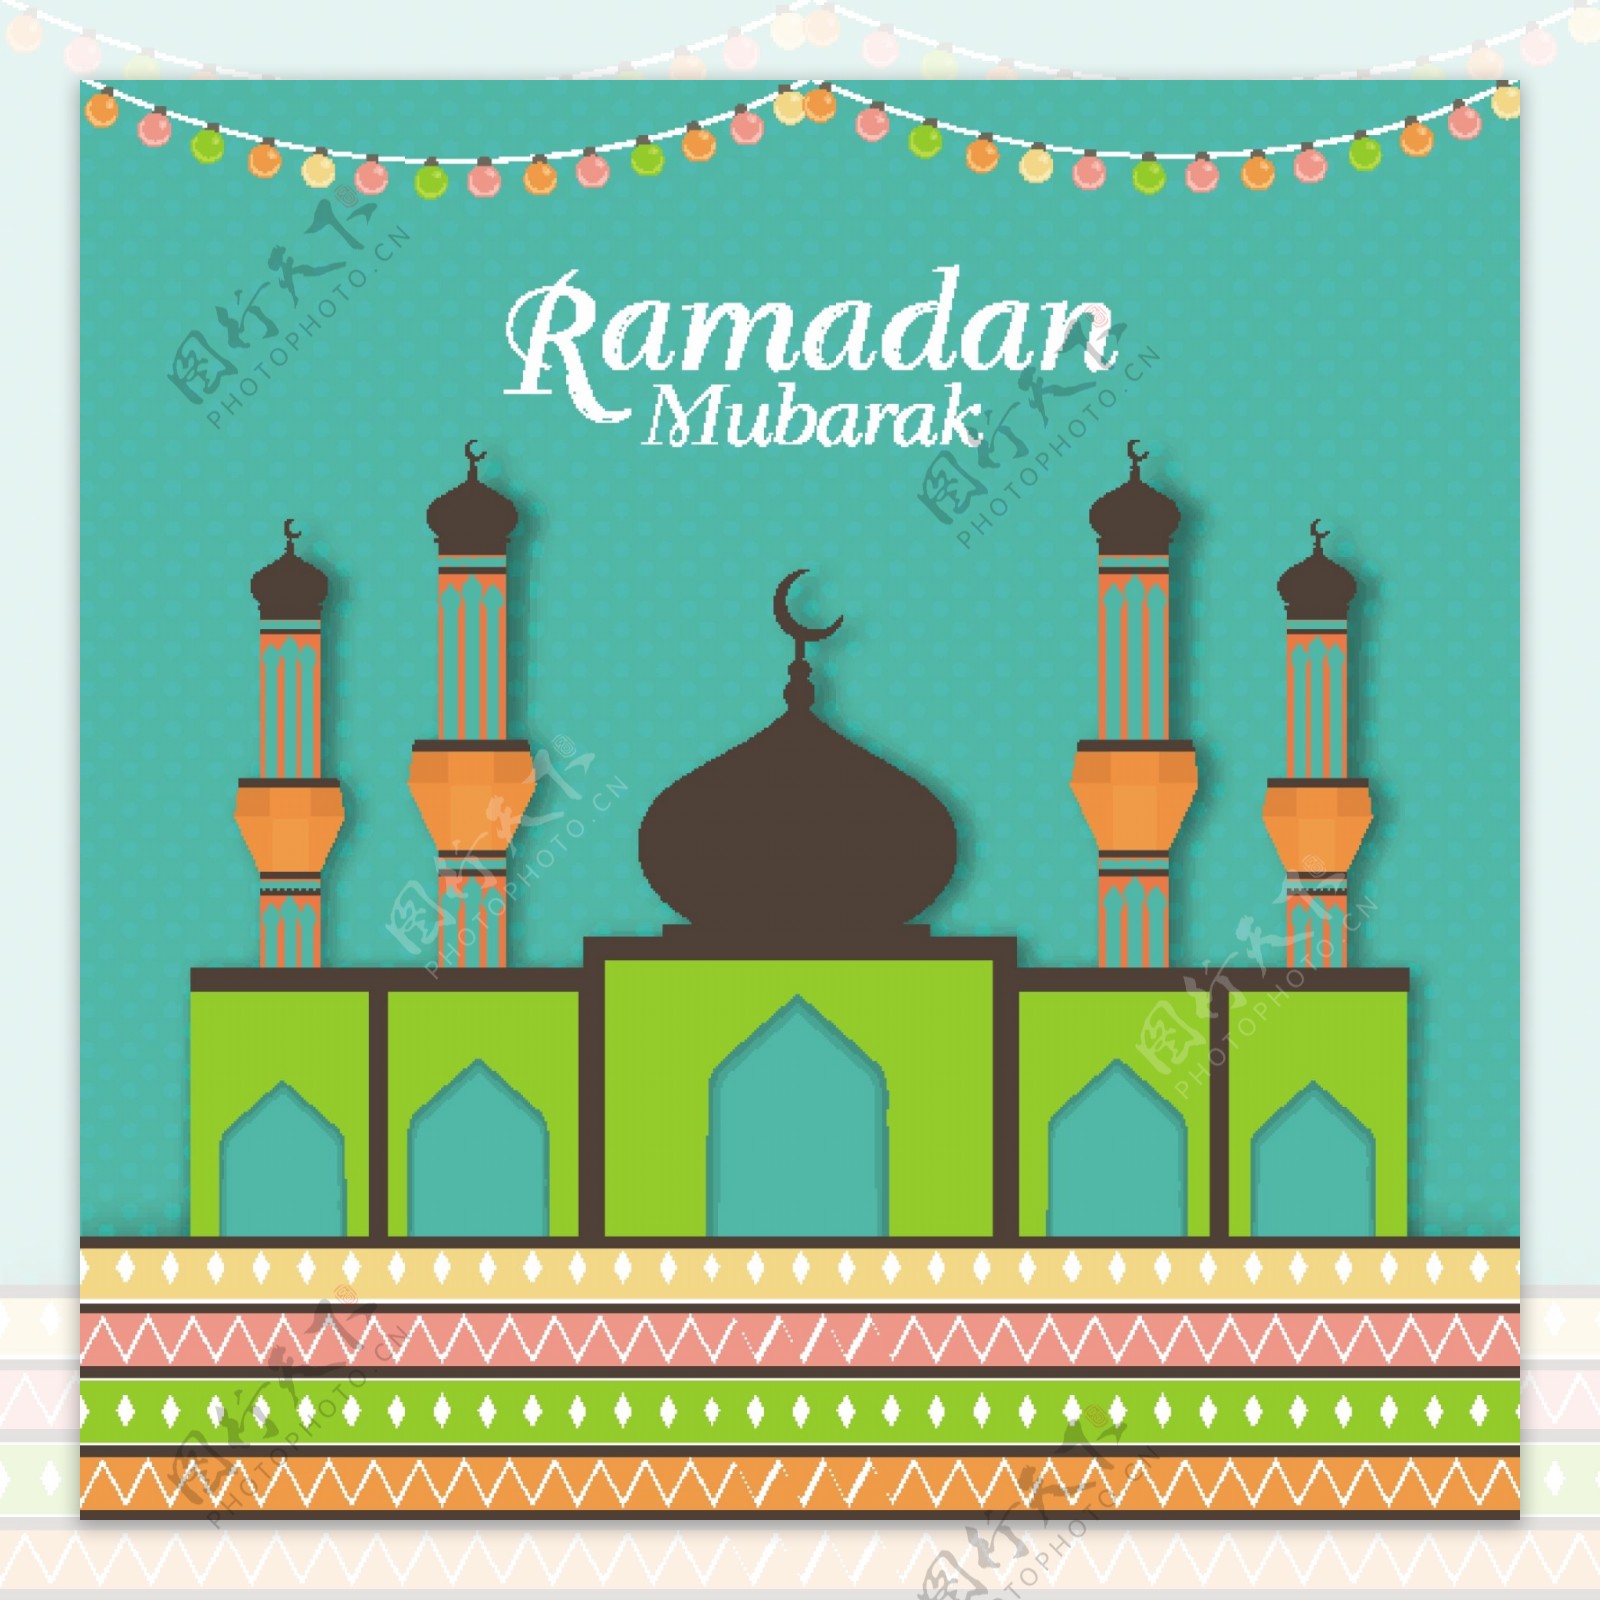 拥抱的伊斯兰教的妇女卡通人物在Eid穆巴拉克节日庆祝 库存例证. 插画 包括有 灯笼, 生物碱, 钞票 - 147804011